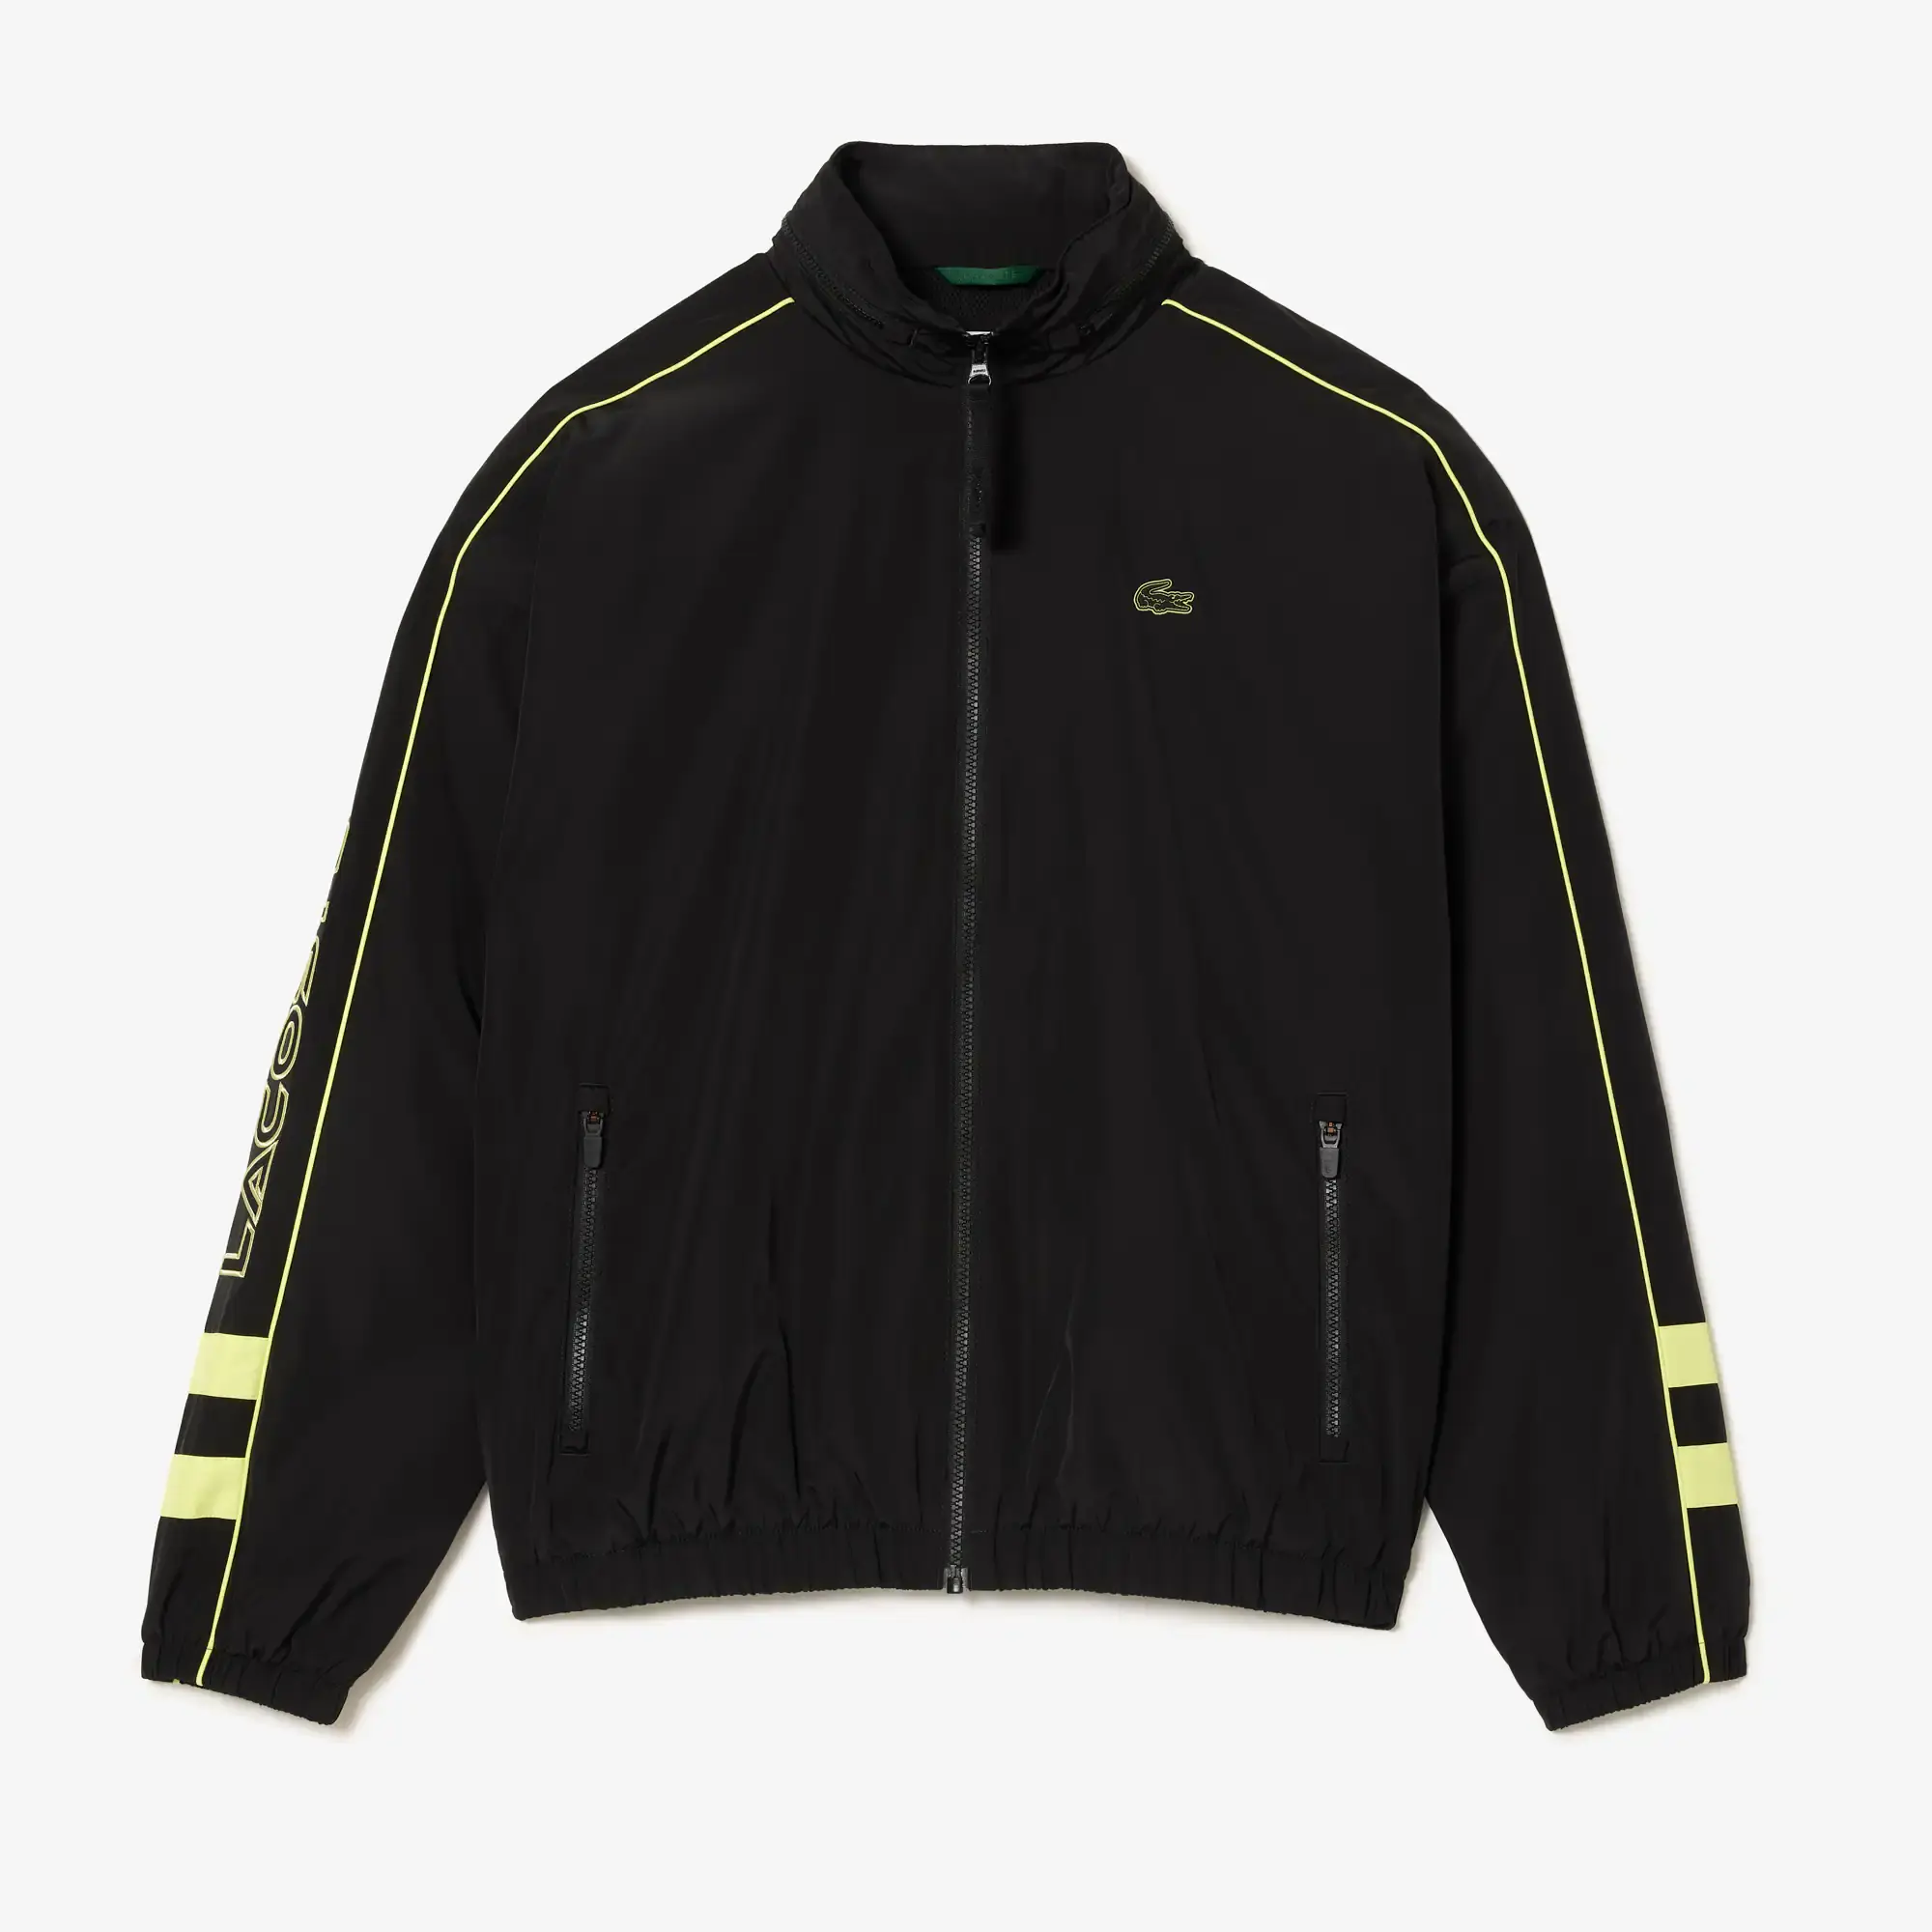 Lacoste Men's Contrast Details Water-Resistant Zip-Up Jacket. 2